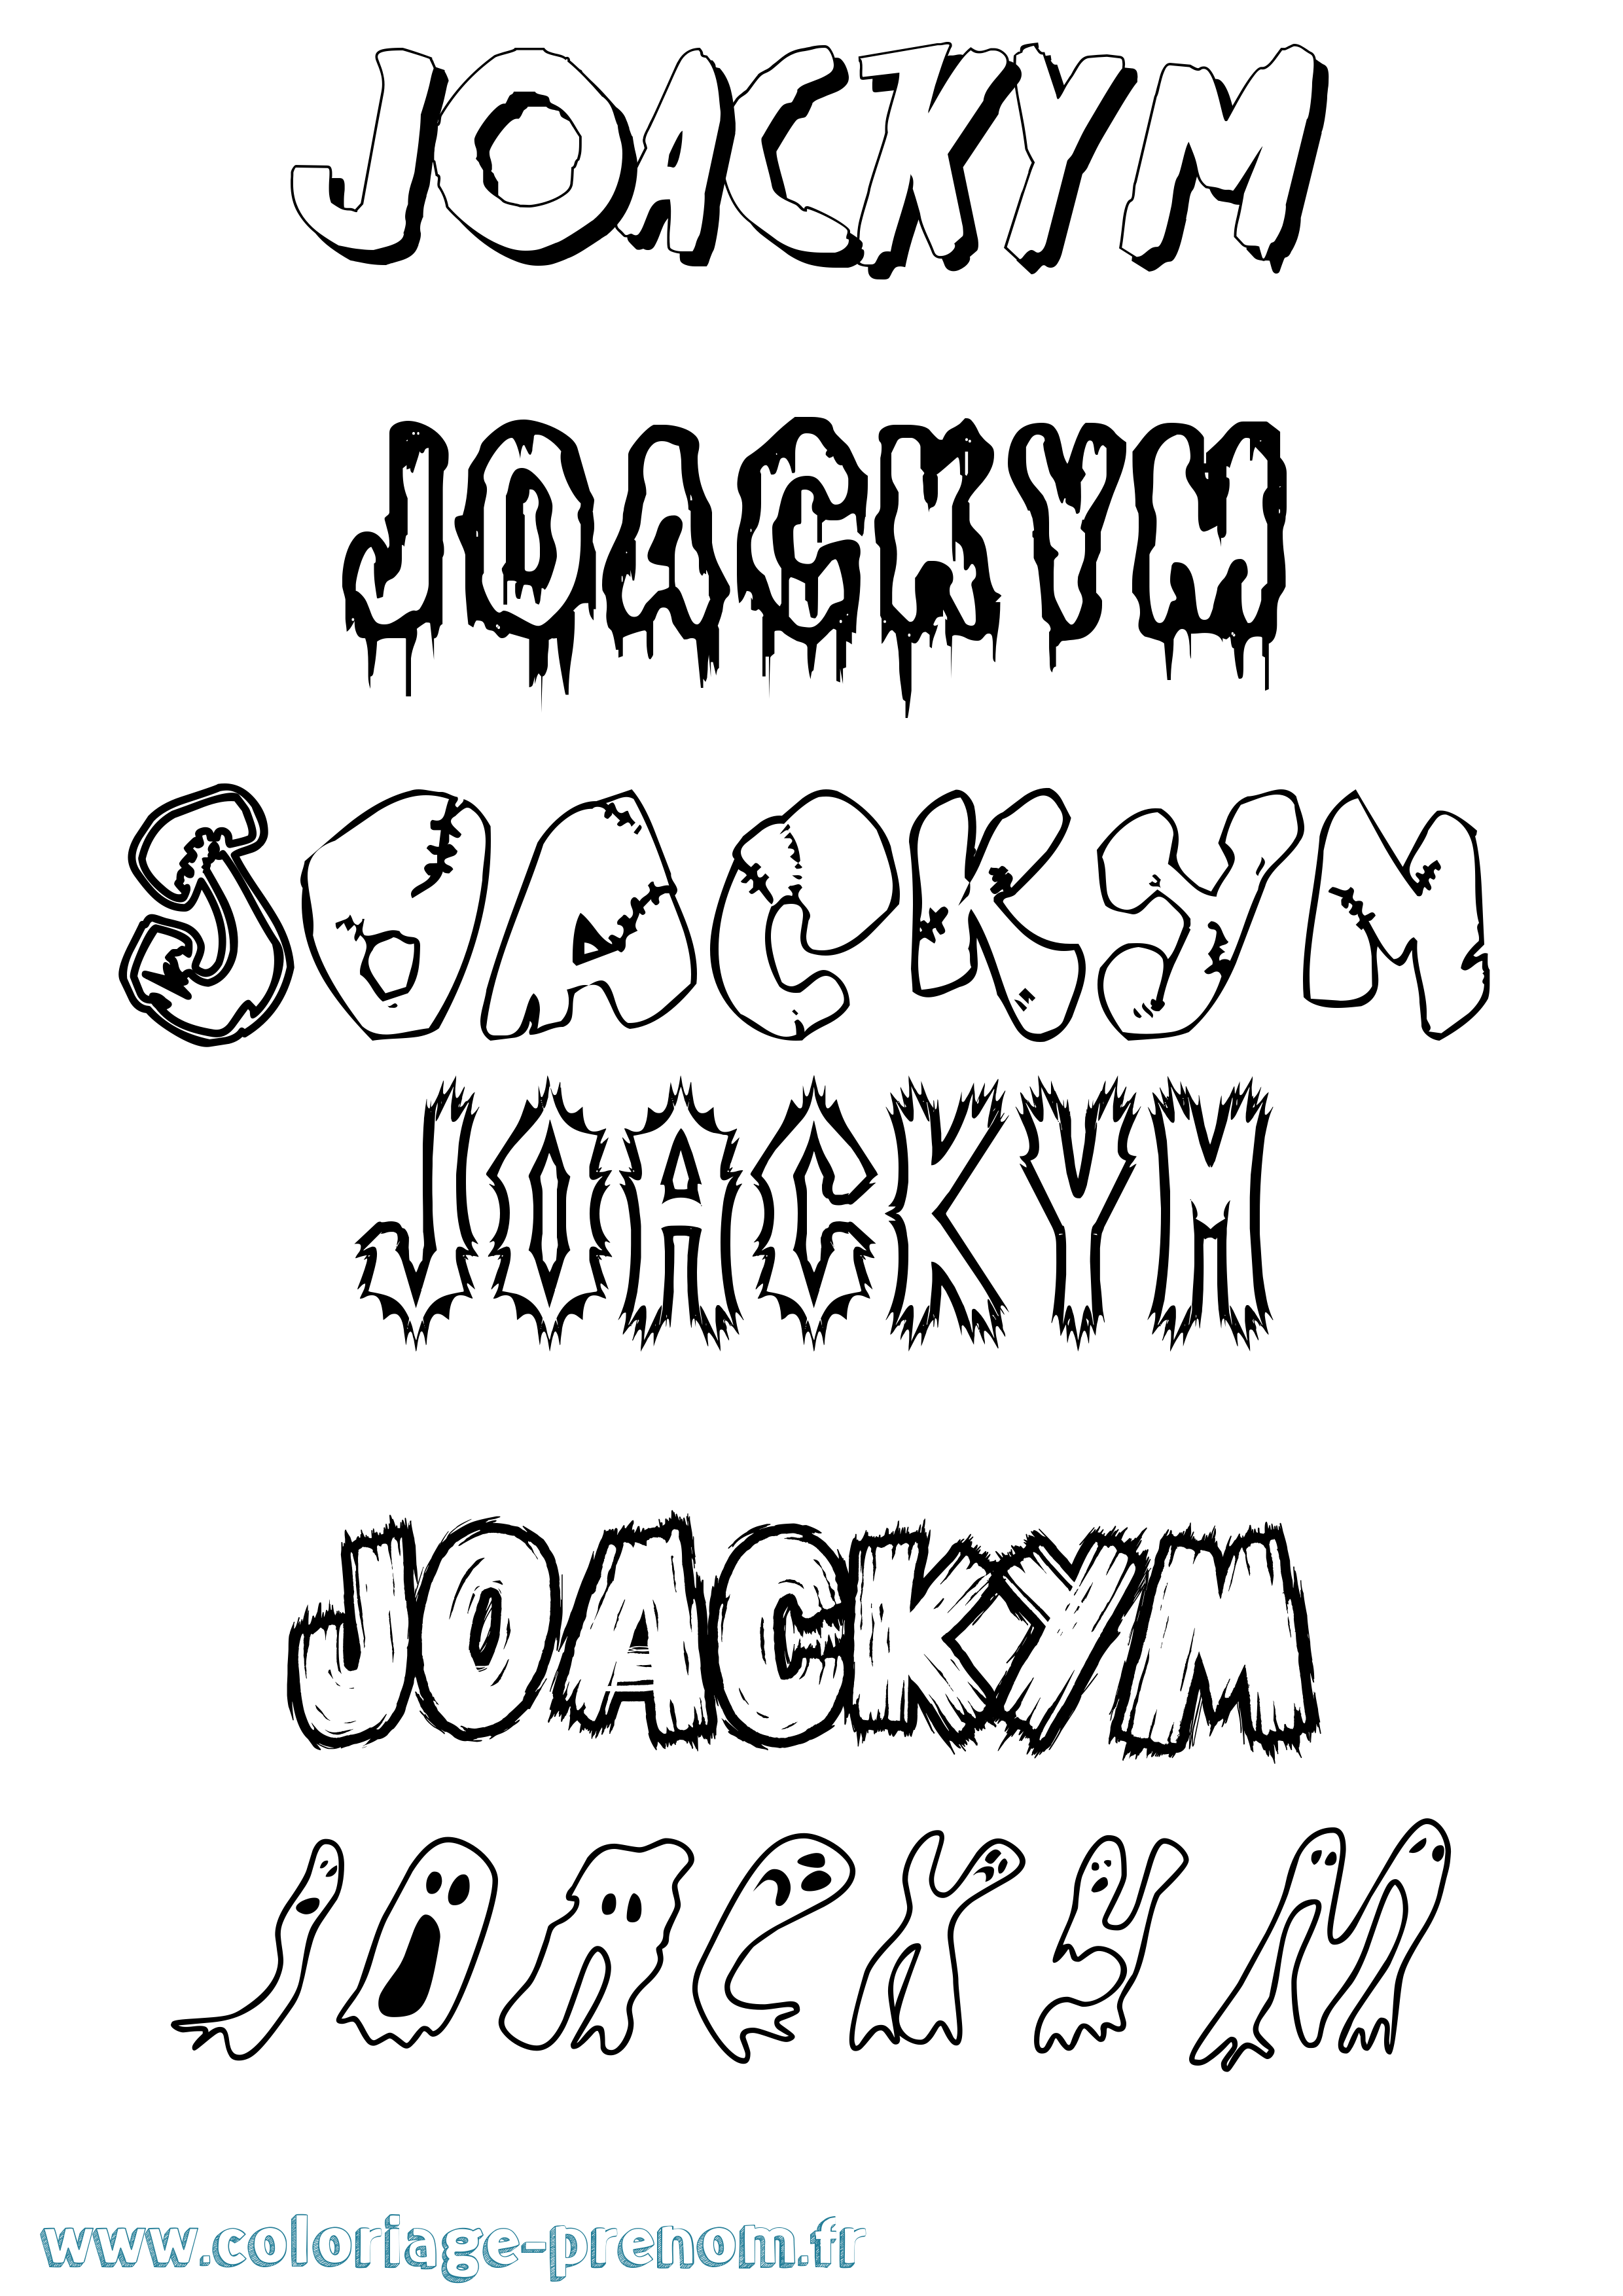 Coloriage prénom Joackym Frisson